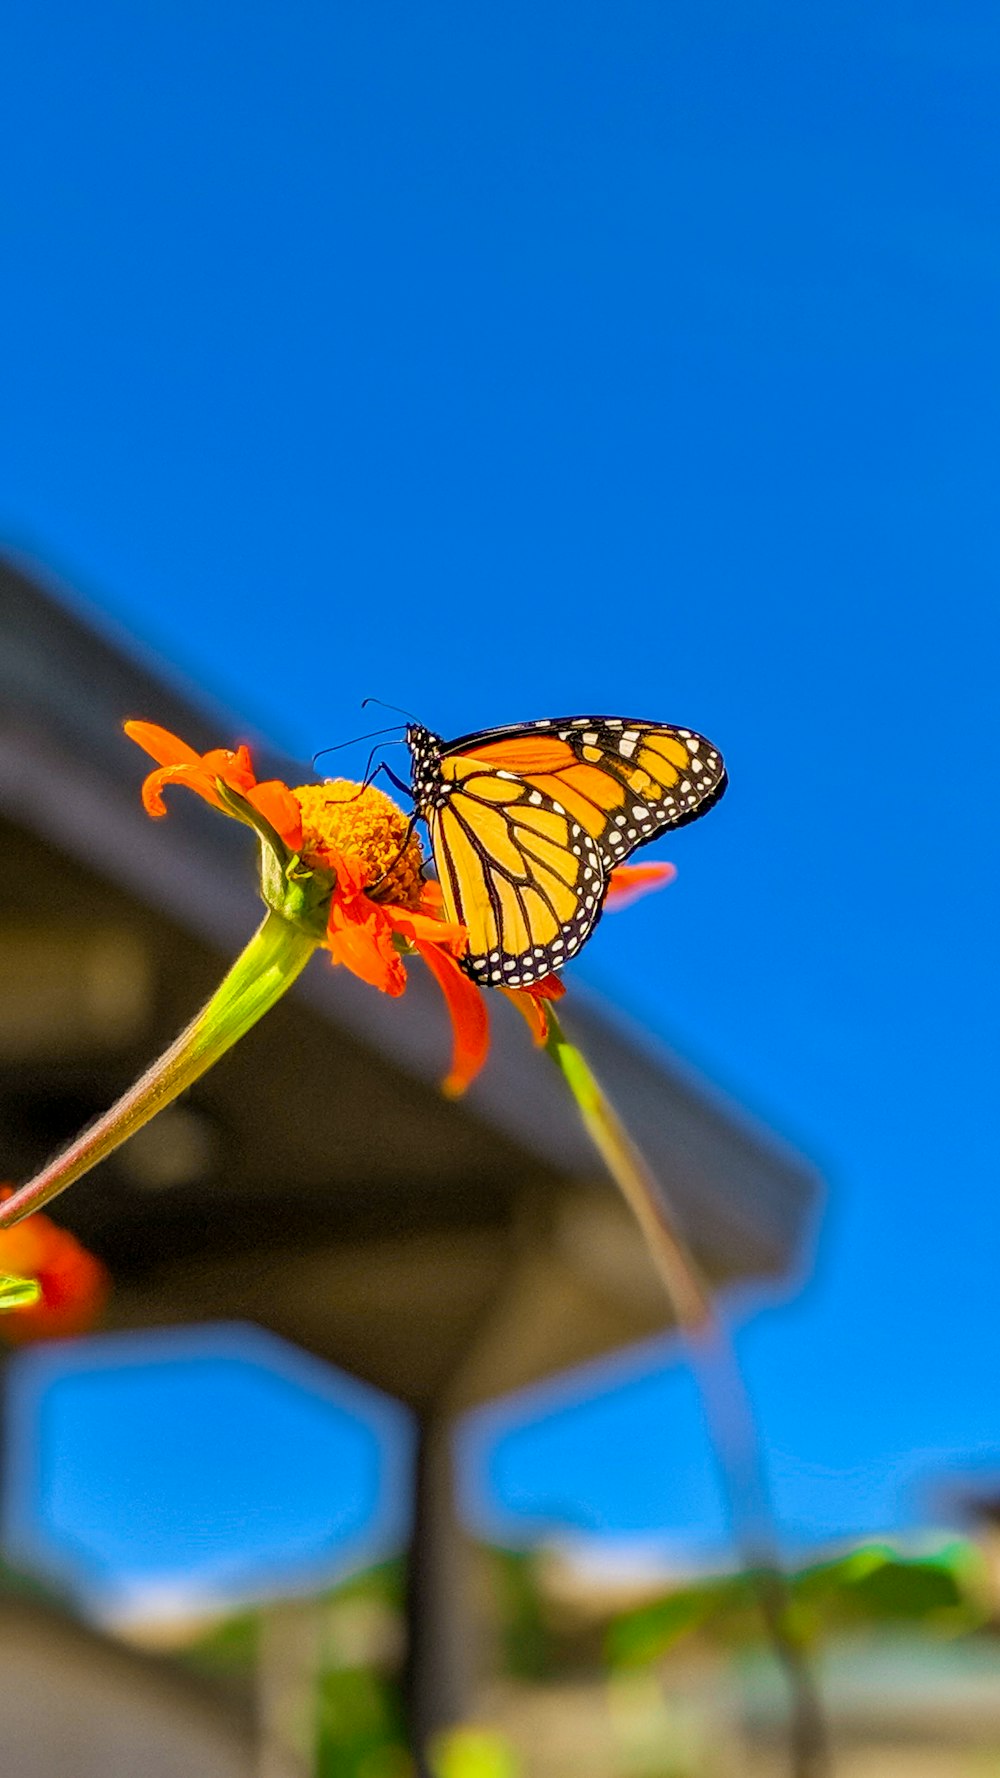 オオカバマダラはオレンジ色の花にとまって、昼間のクローズアップ写真で